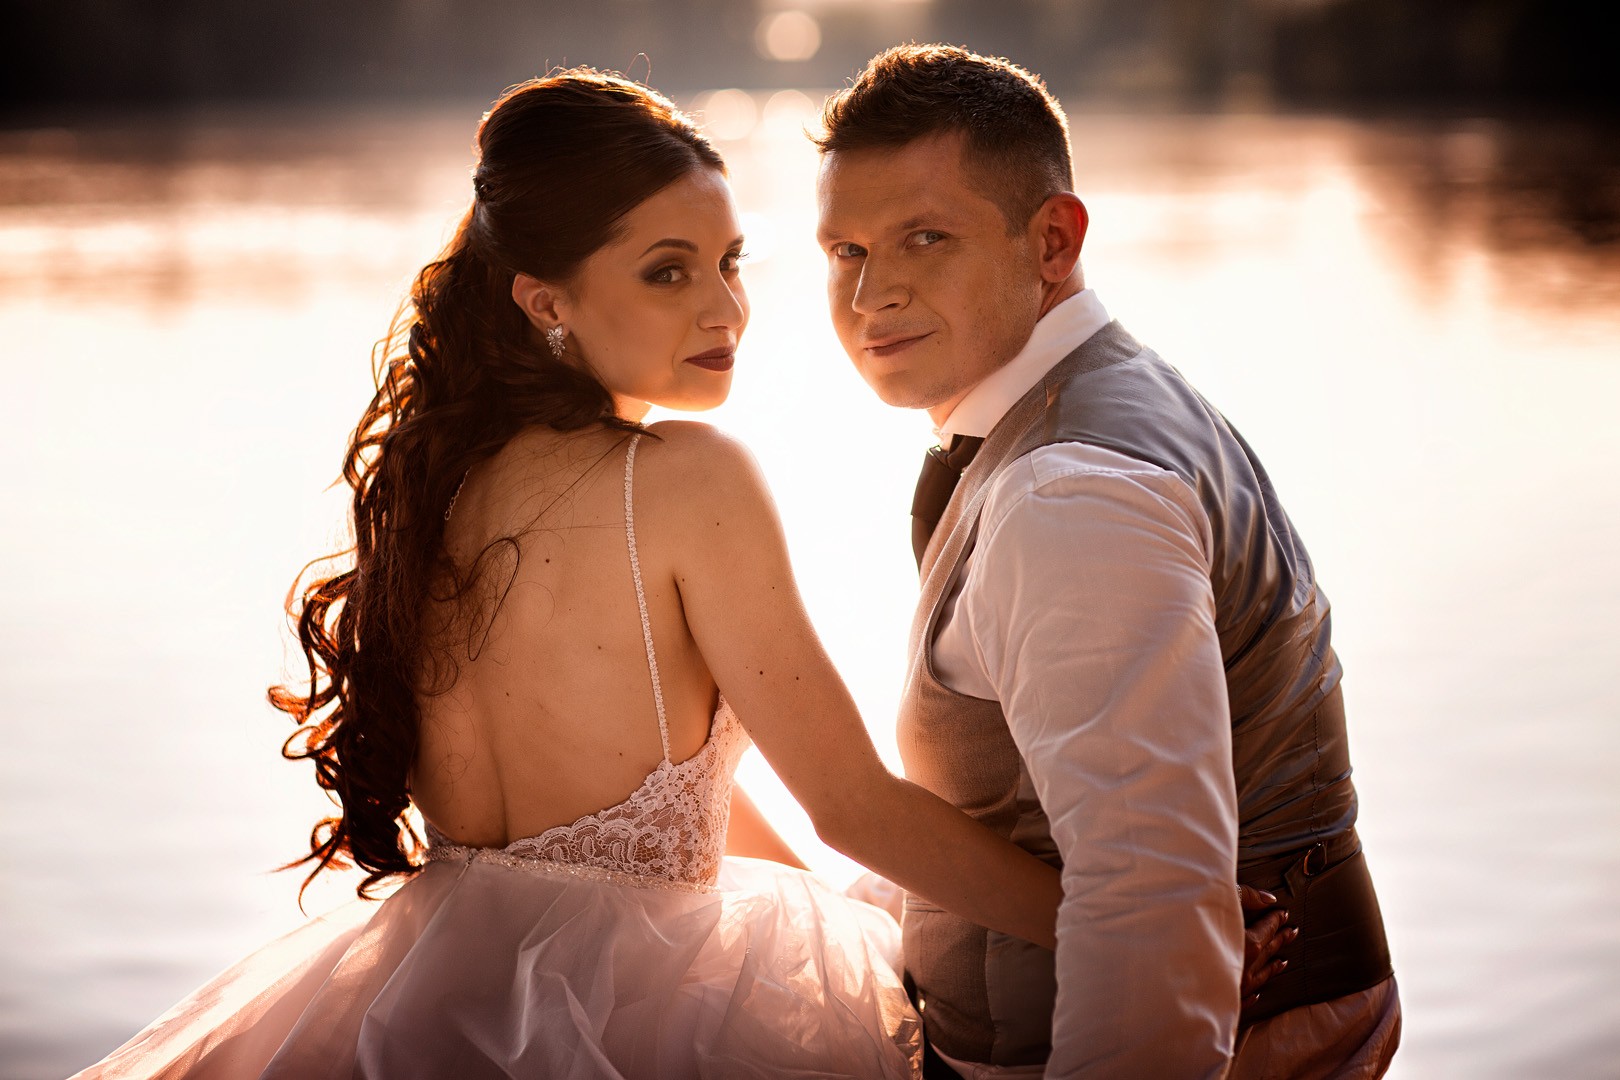 Picturesque dream wedding of Kloudy & Michal in Hluboká nad Vltavou. - 0415.jpg